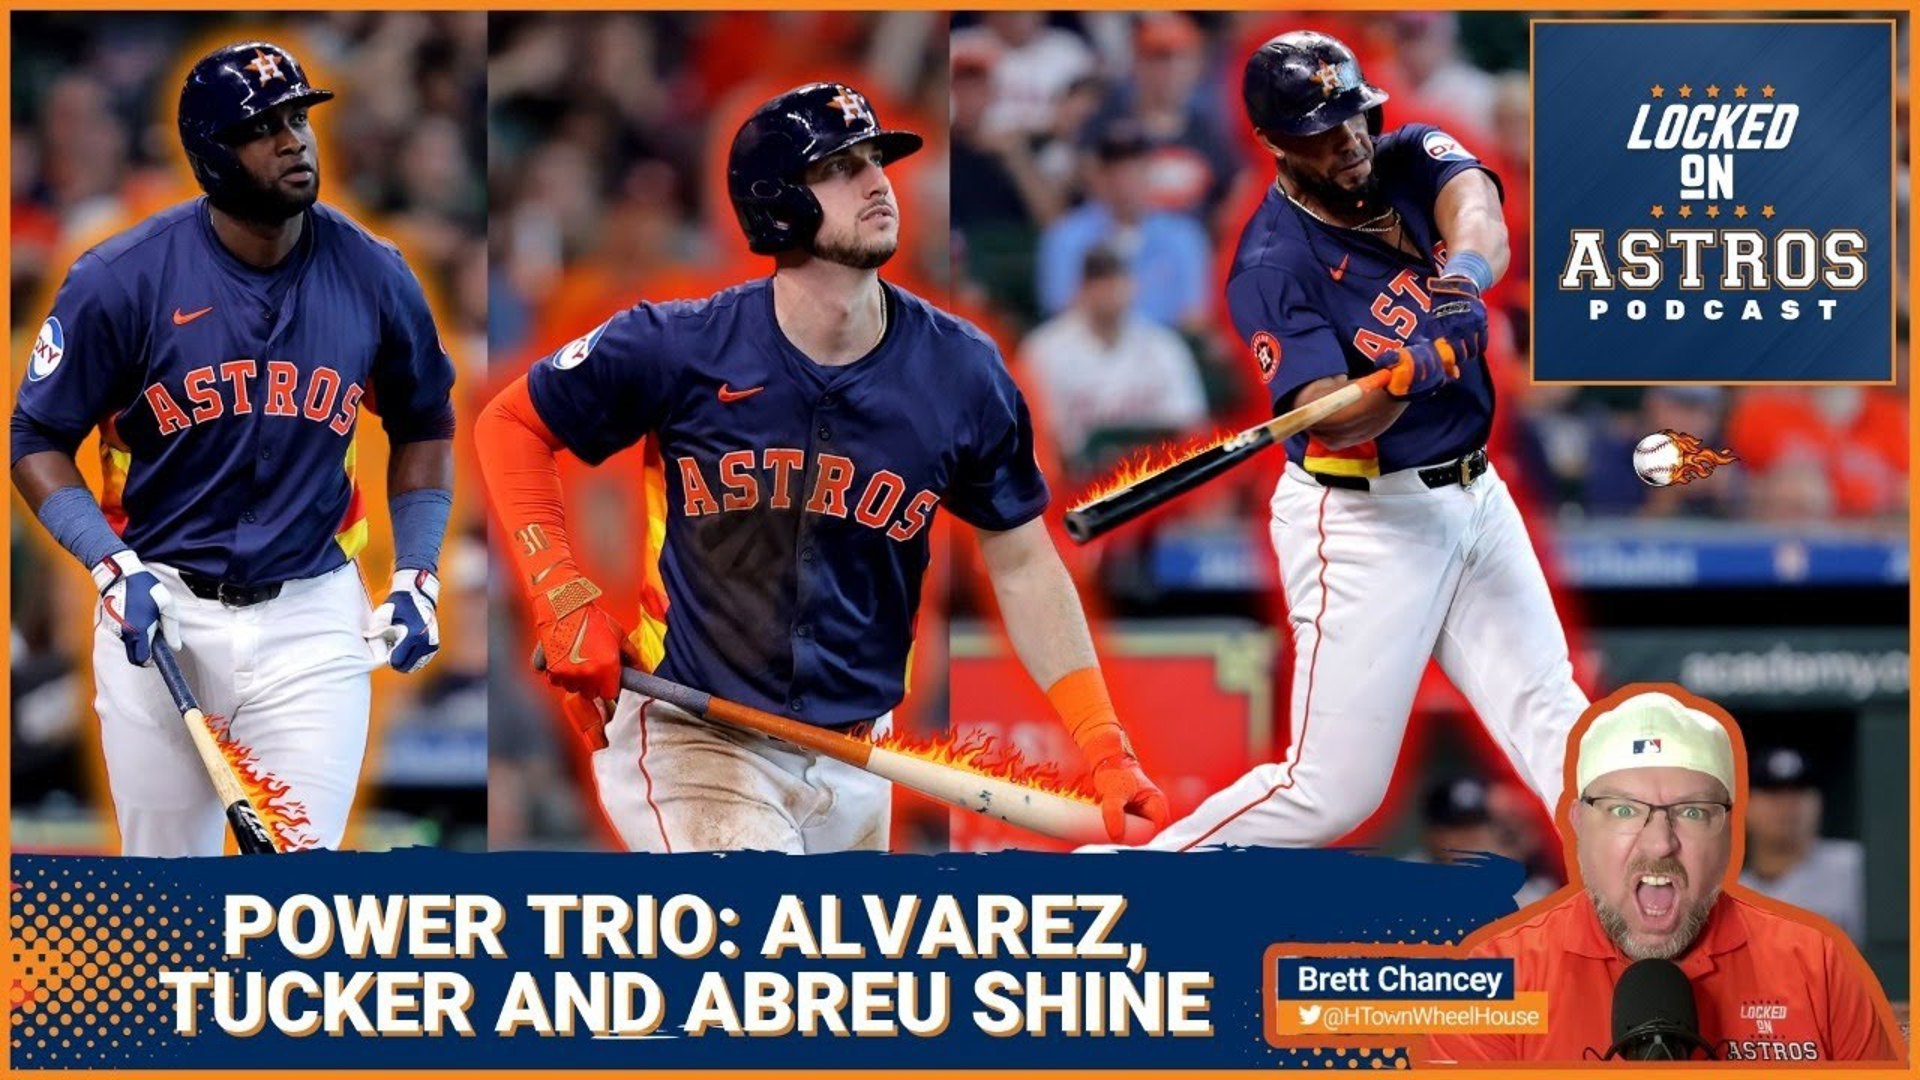 Astros power trio: Alvarez, Tucker and Abreu shine